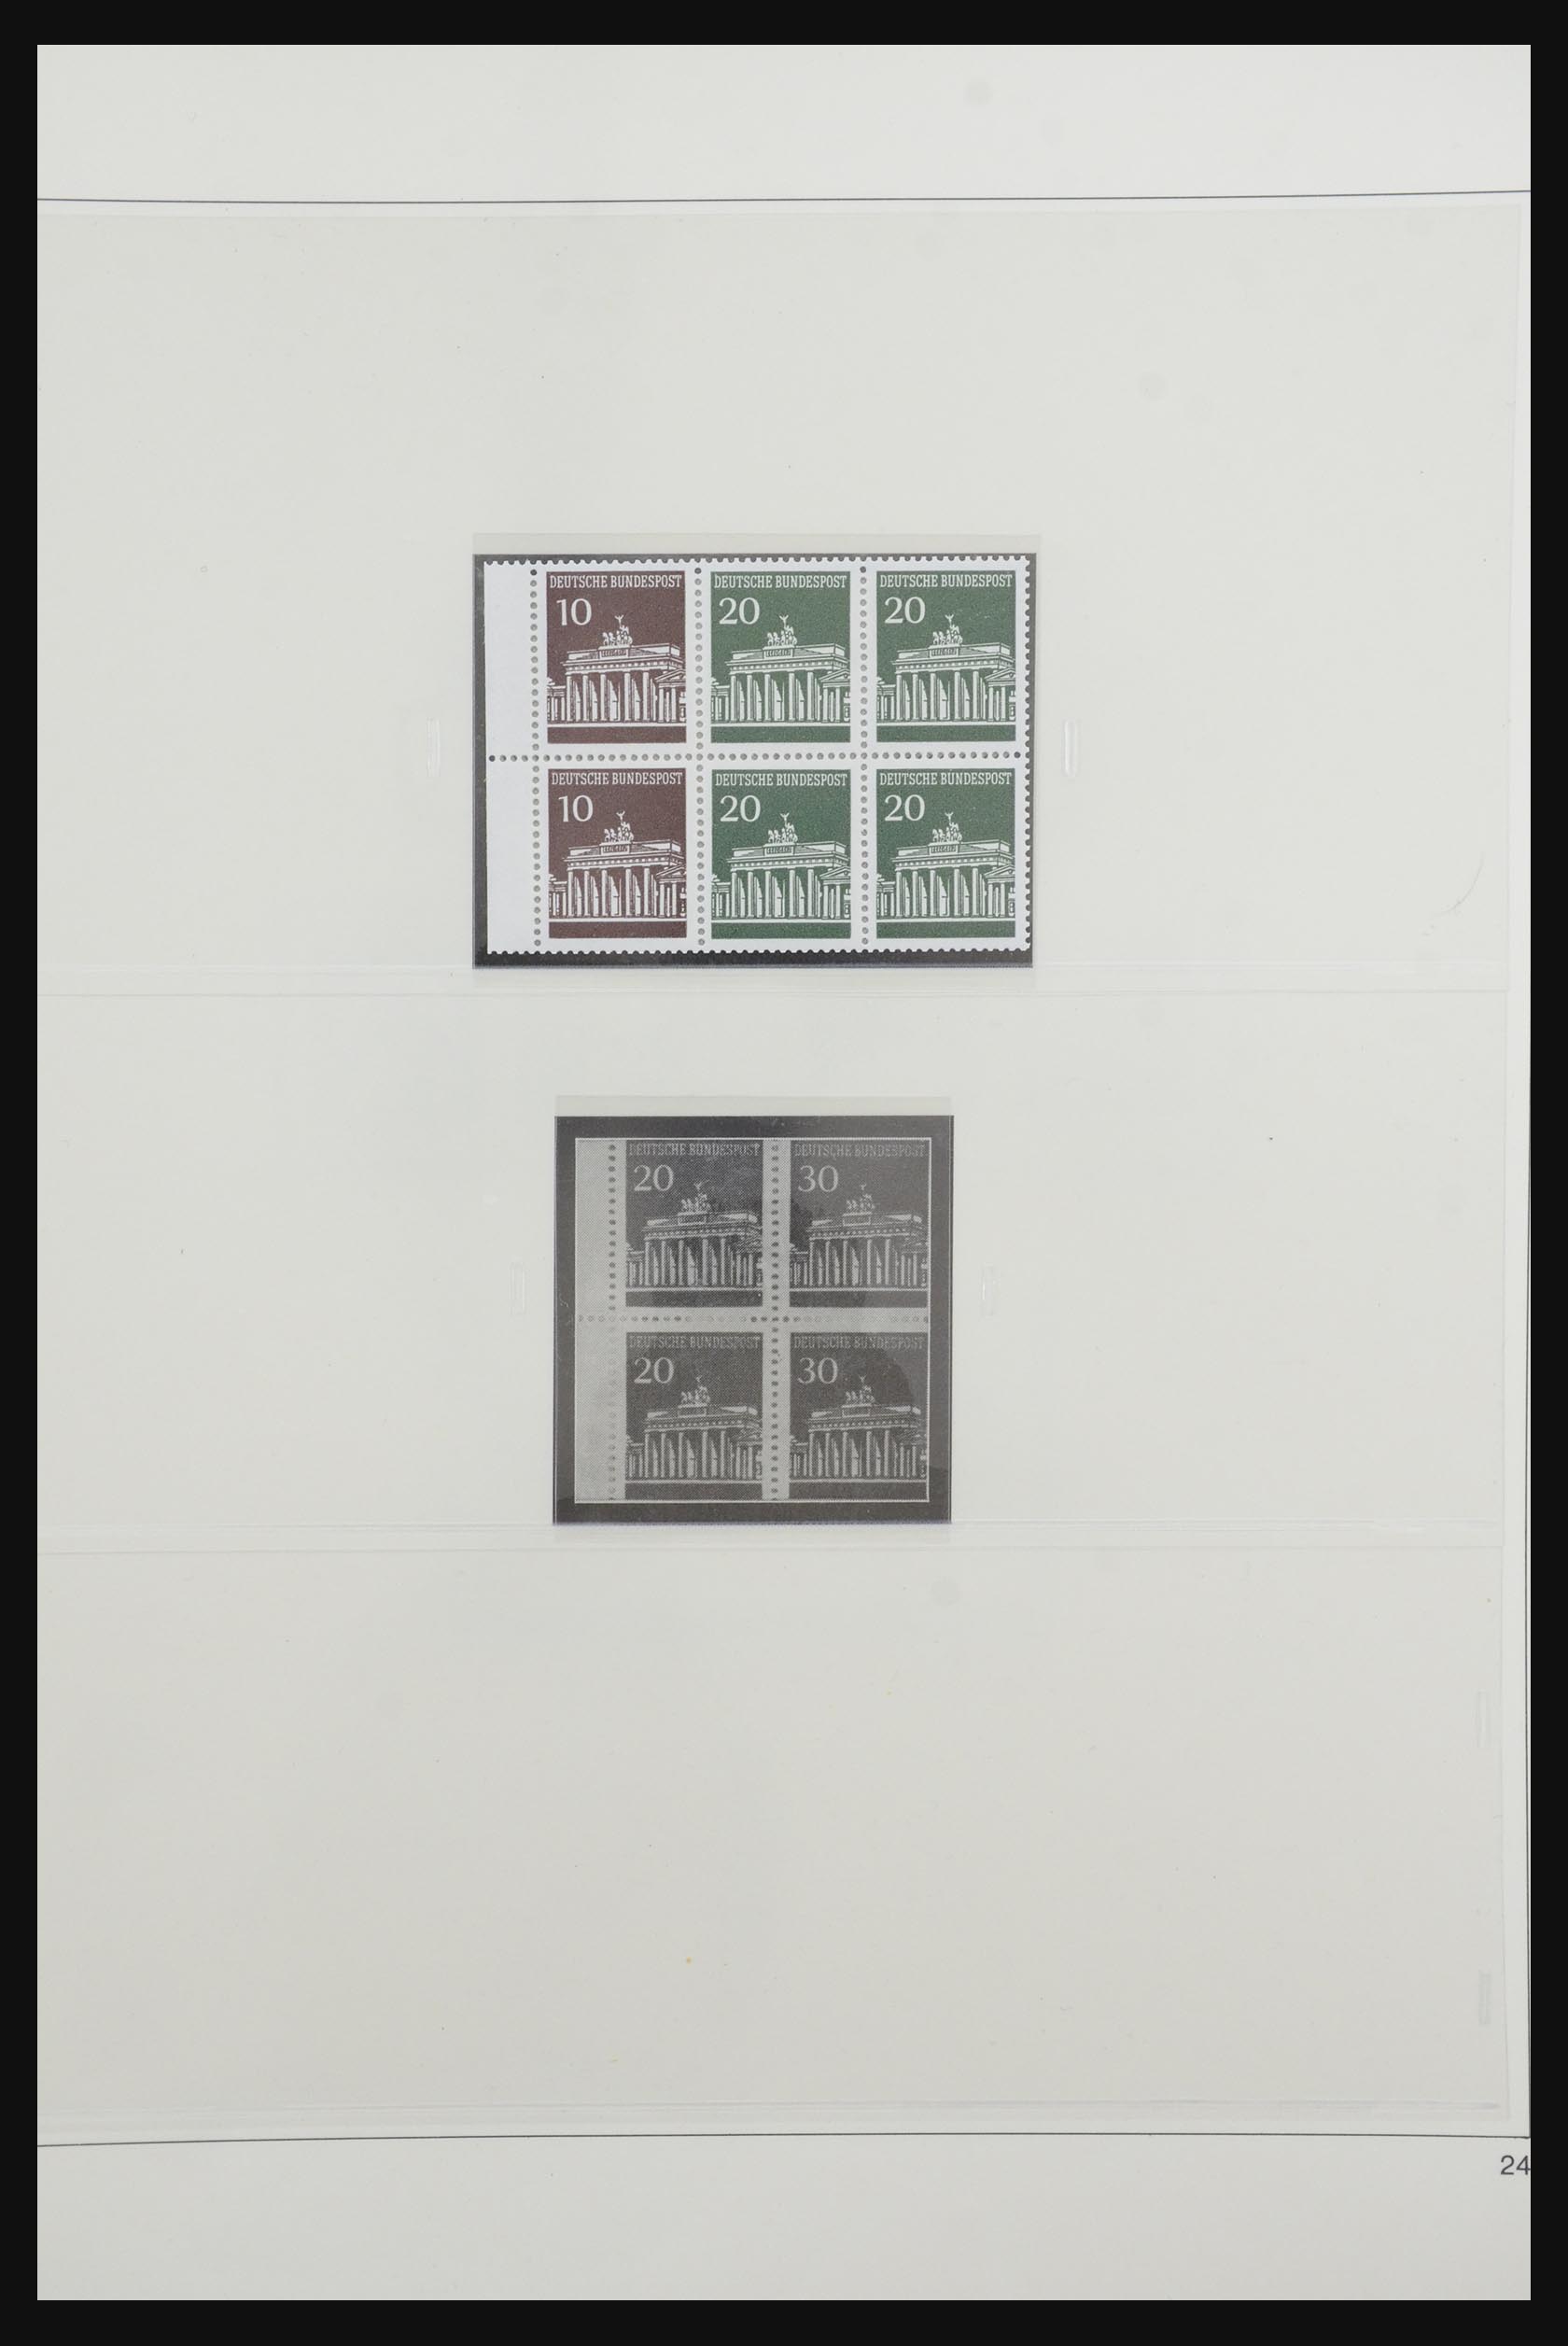 31842 033 - 31842 Bundespost combinations 1951-2003.